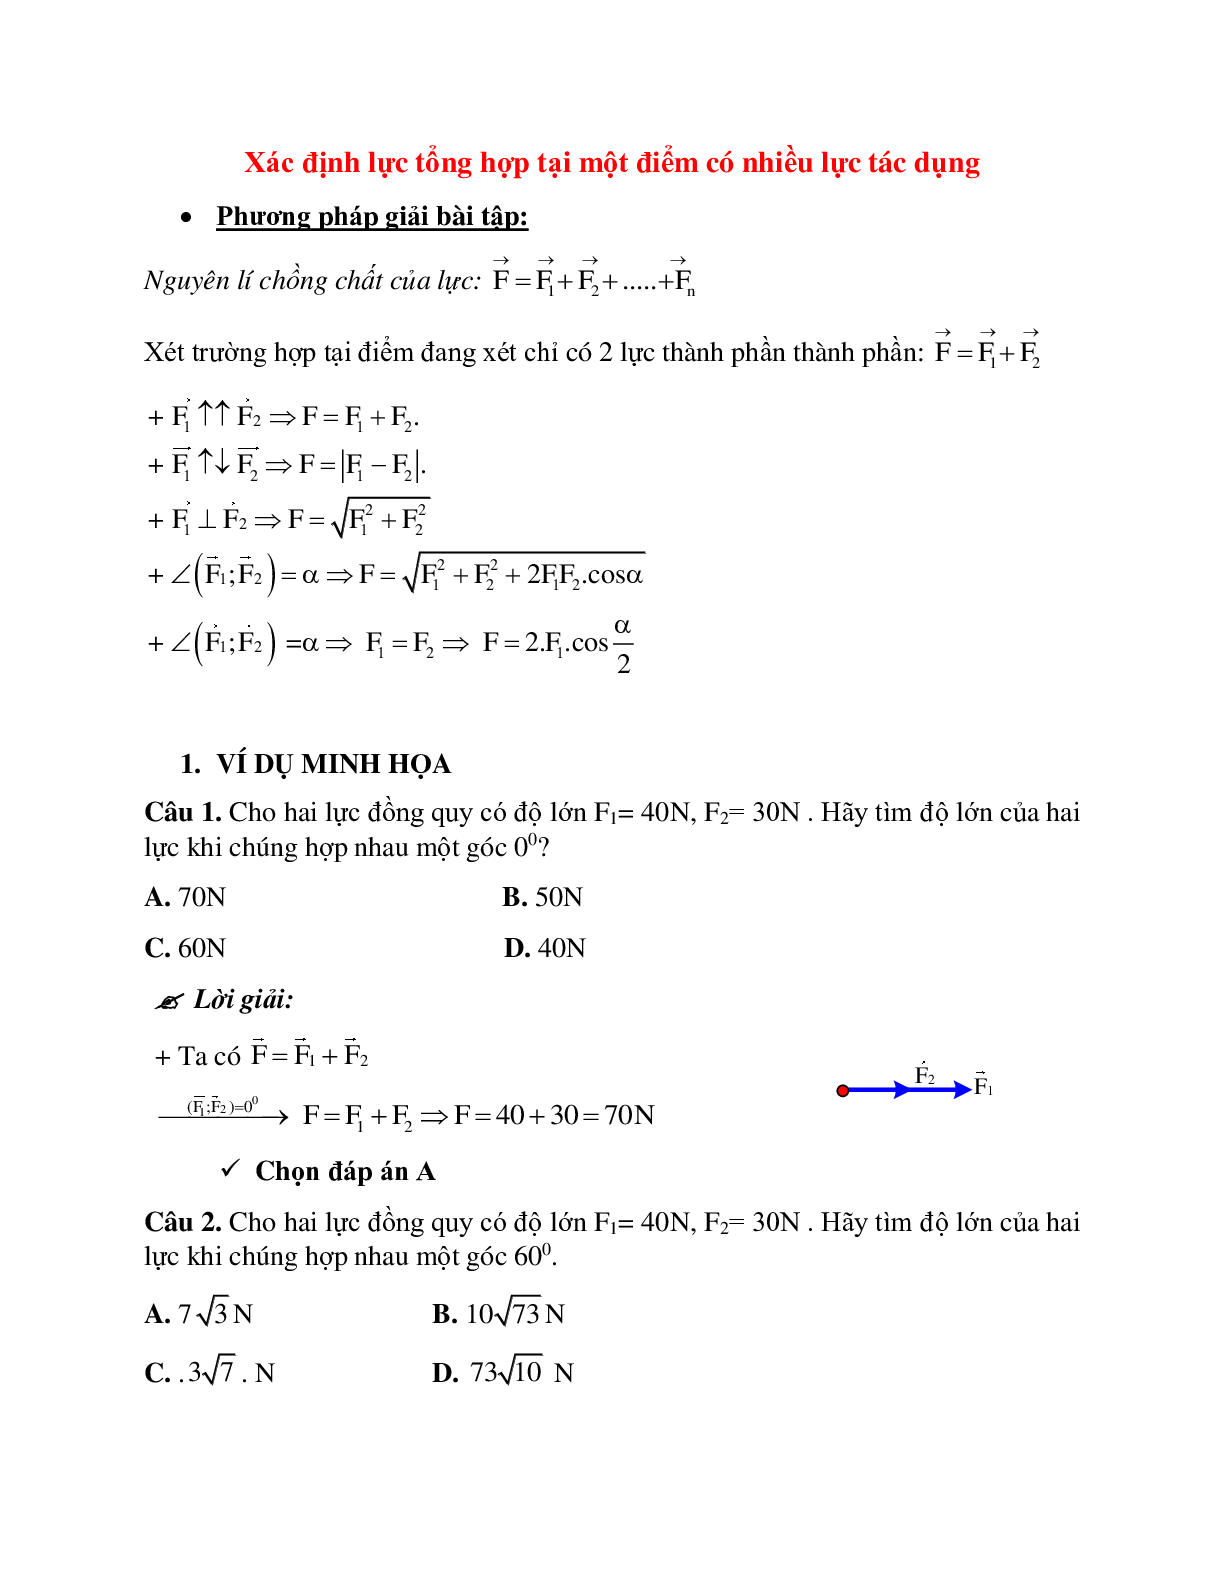 Phương pháp giải và bài tập về Xác định lực tổng hợp tại một điểm có nhiều lực tác dụng (trang 1)